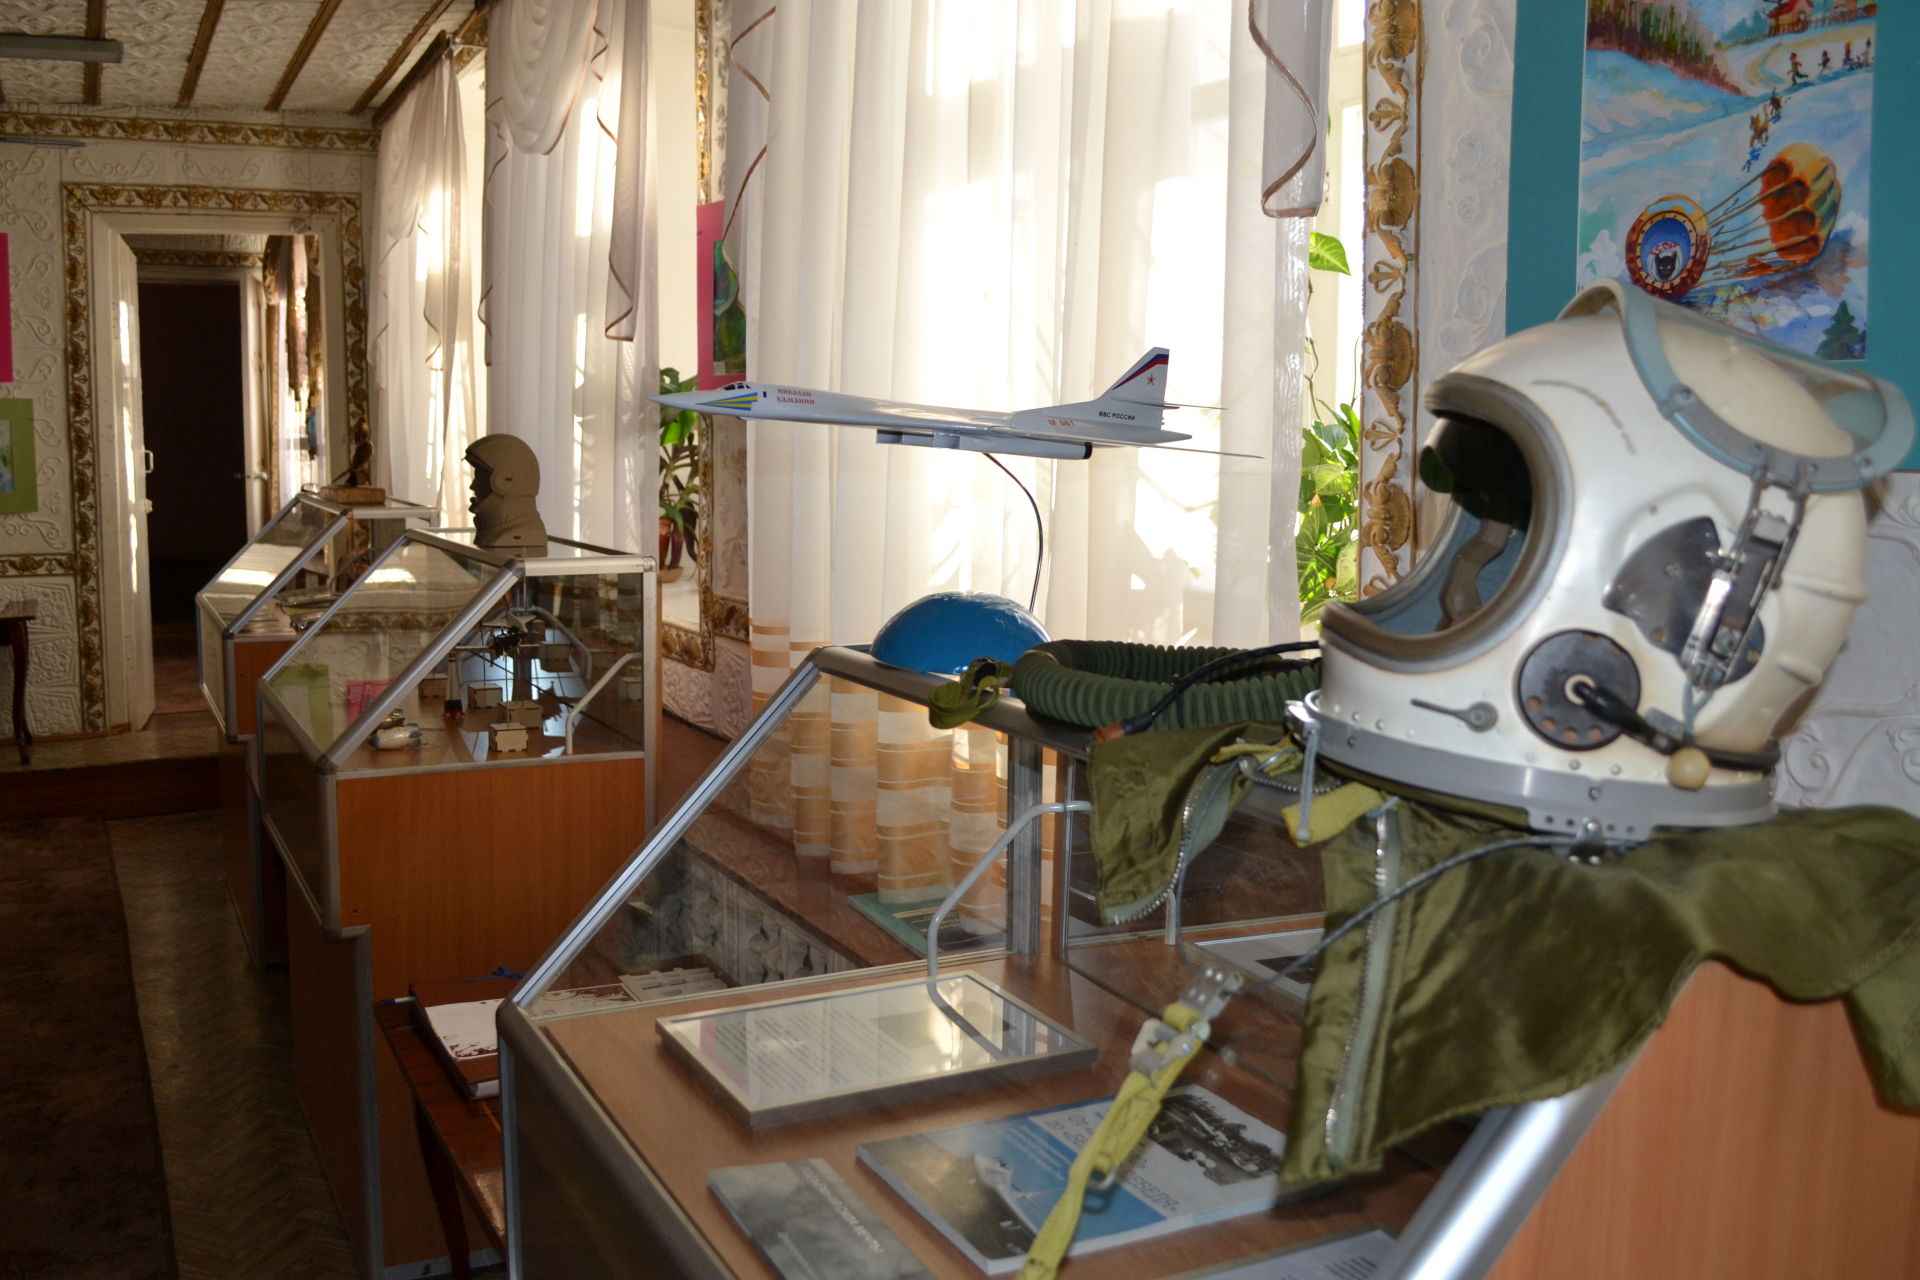 В Заинске открылись две выставки о космосе